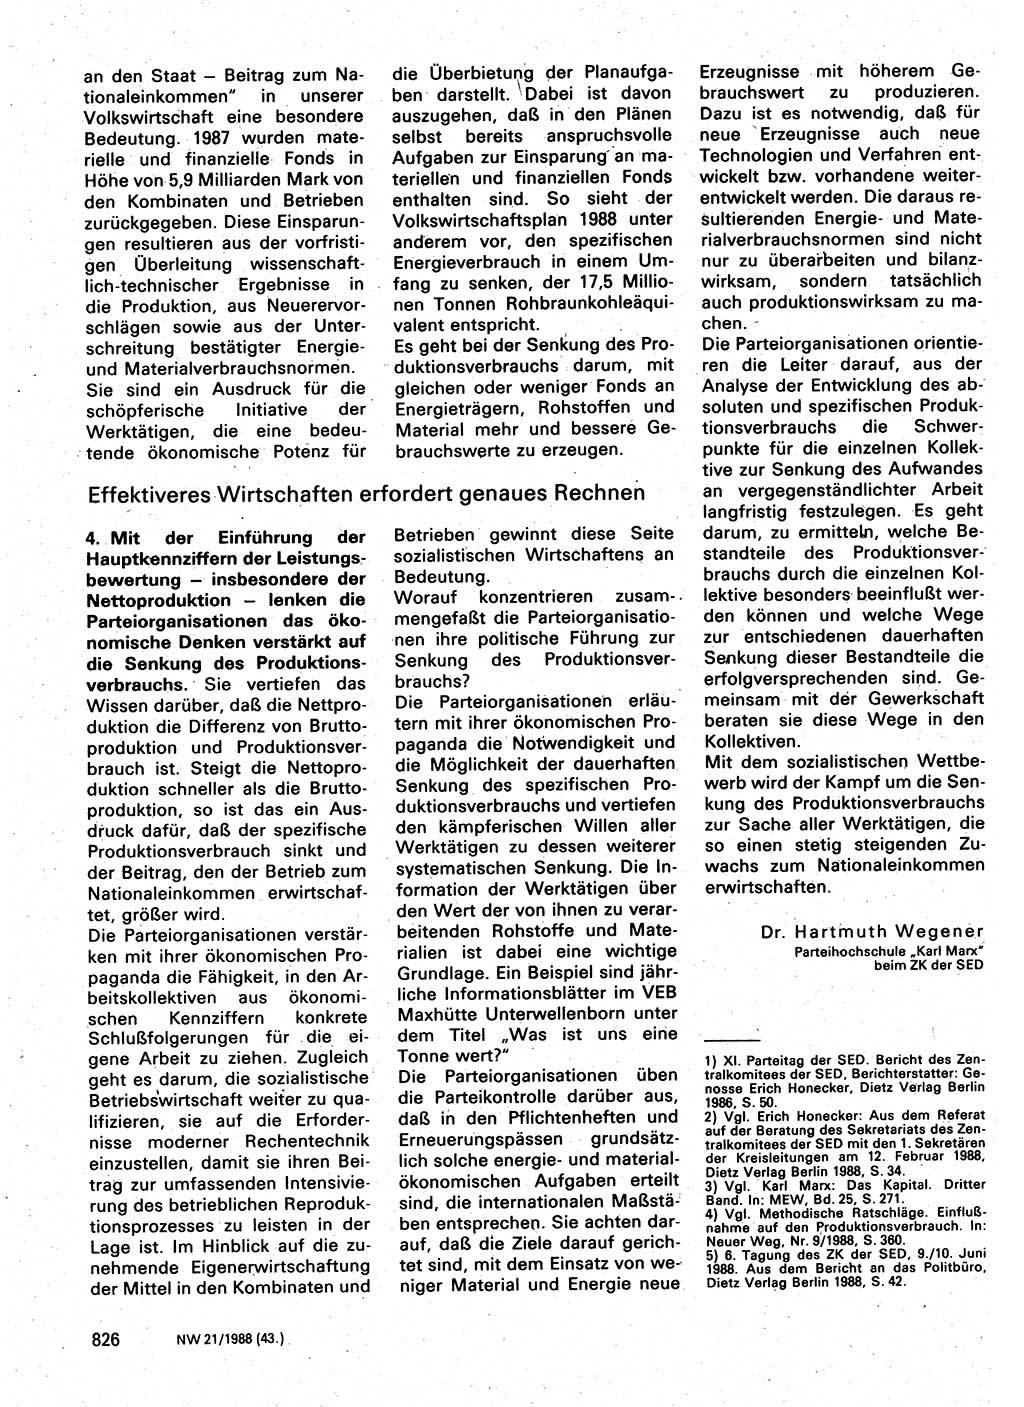 Neuer Weg (NW), Organ des Zentralkomitees (ZK) der SED (Sozialistische Einheitspartei Deutschlands) für Fragen des Parteilebens, 43. Jahrgang [Deutsche Demokratische Republik (DDR)] 1988, Seite 826 (NW ZK SED DDR 1988, S. 826)